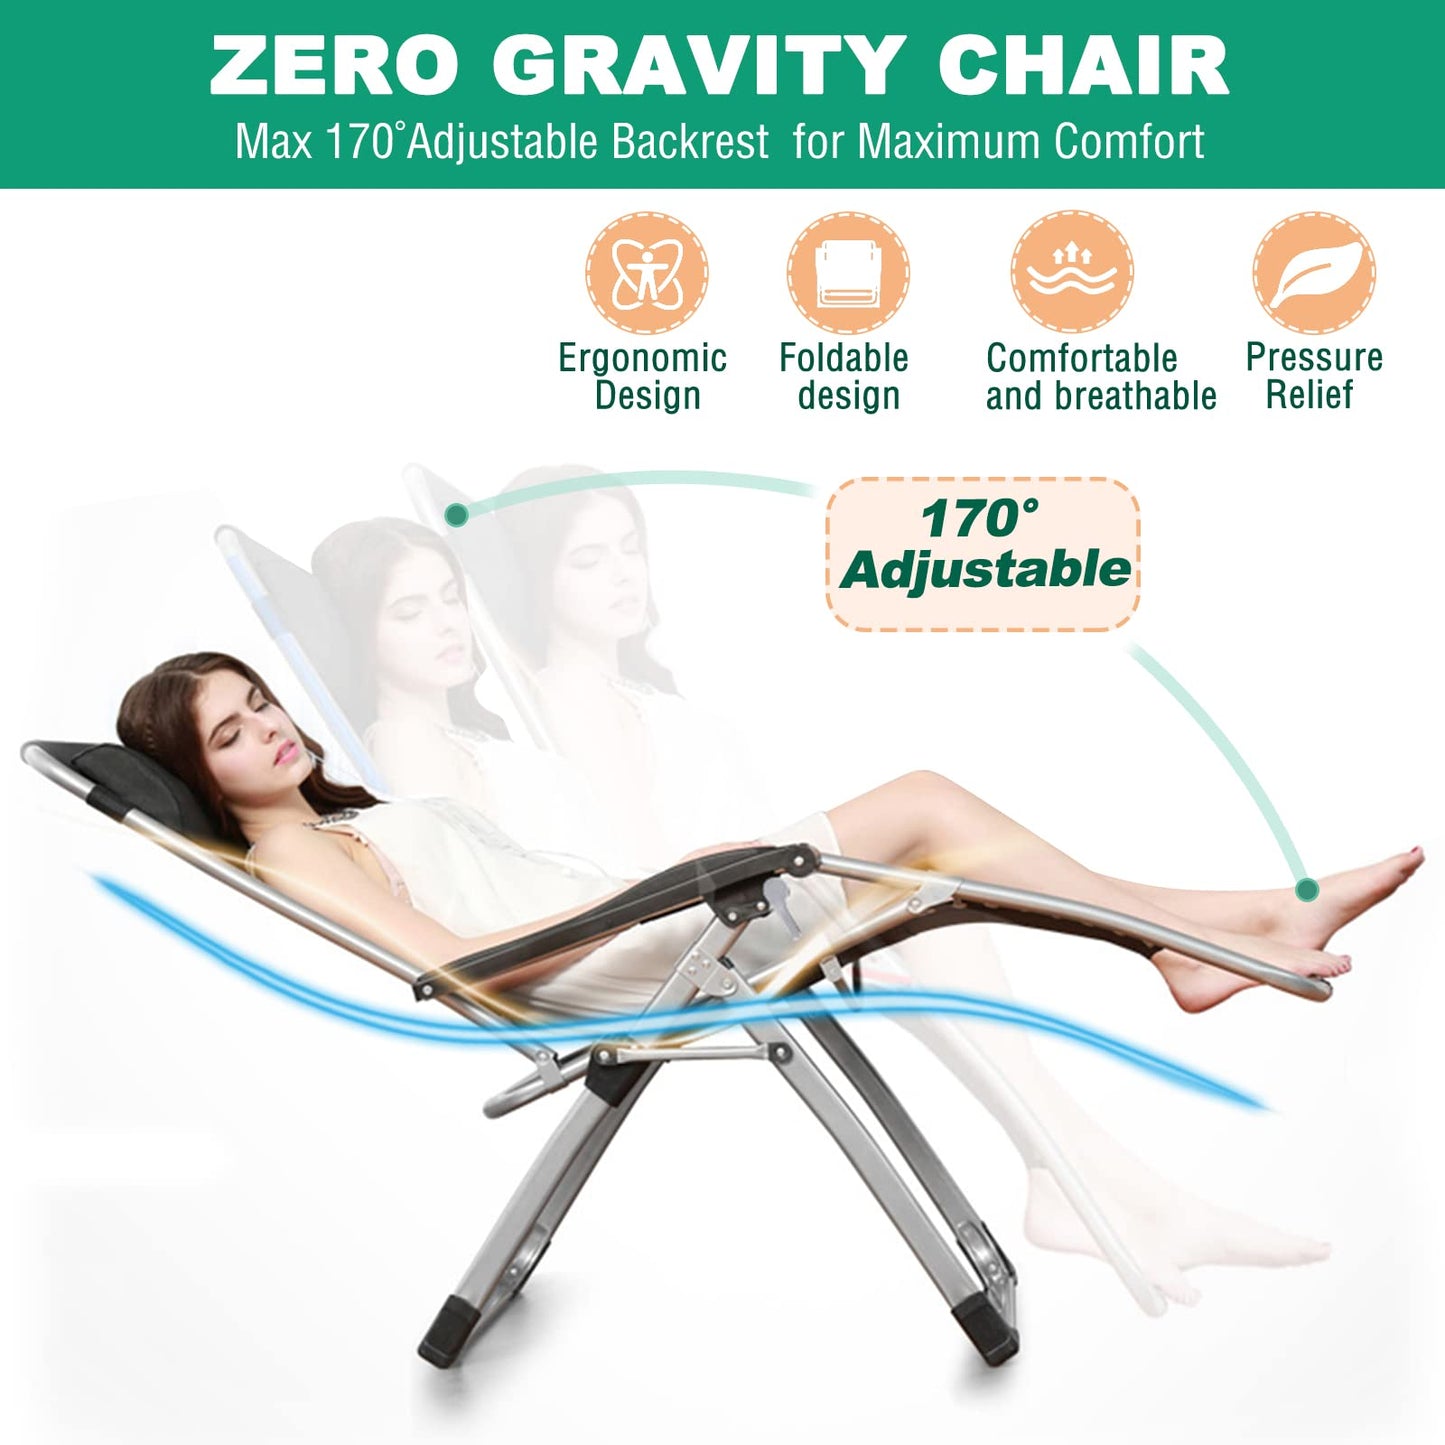 LILYPELLE Chaise longue inclinable Zero Gravity, chaise longue portable inclinable de qualité supérieure avec coussin amovible, appuie-tête et porte-gobelet, chaise longue de terrasse inclinable Zero Gravity Chair-2Pack Noble Black